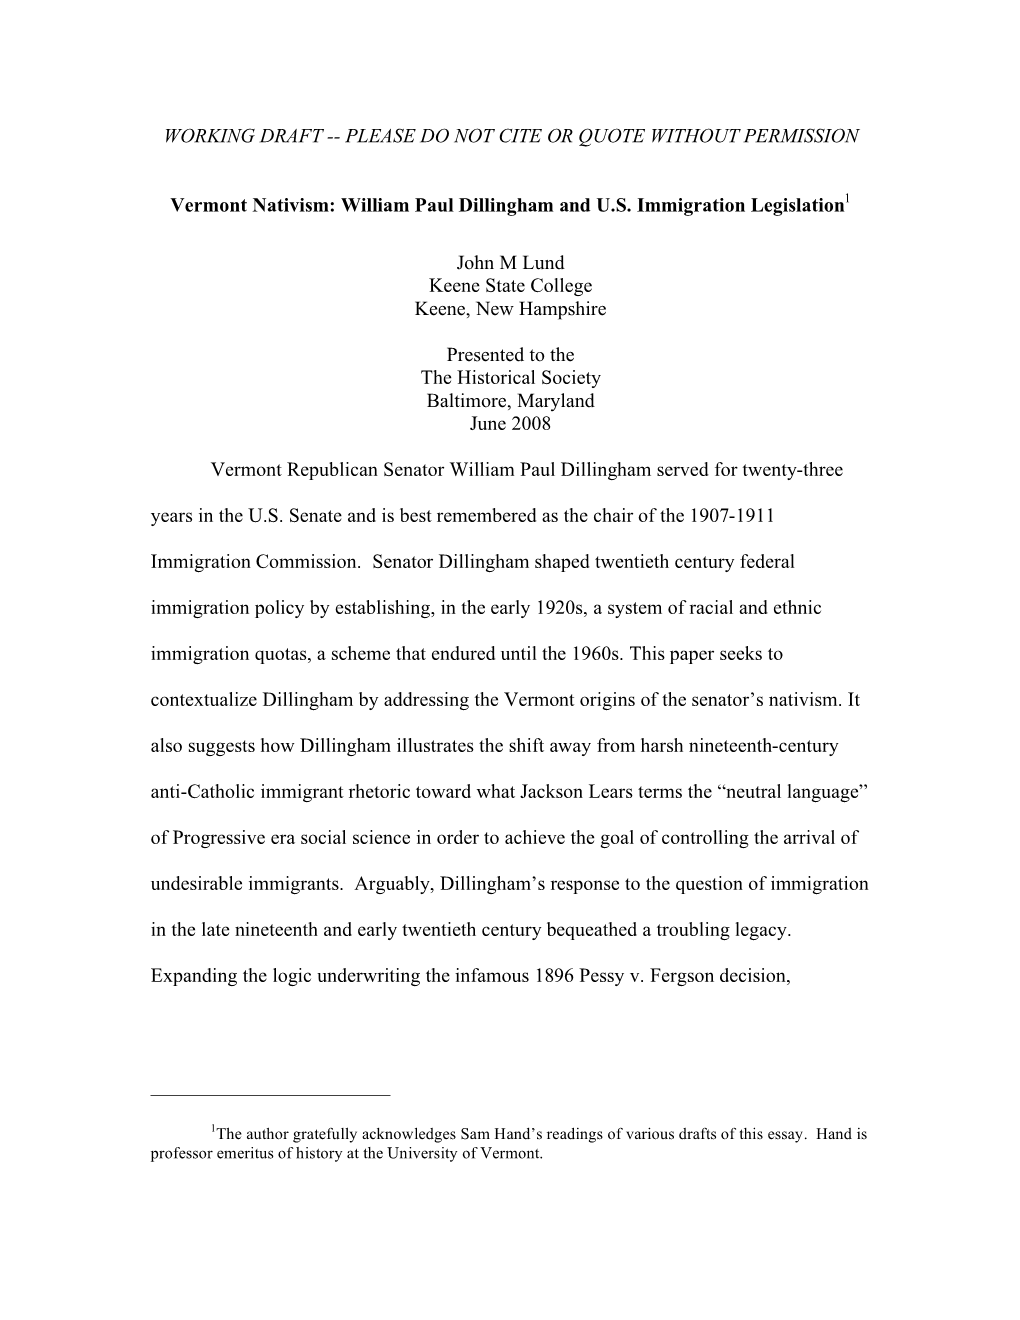 Vermont Nativism: William Paul Dillingham and US Immigration